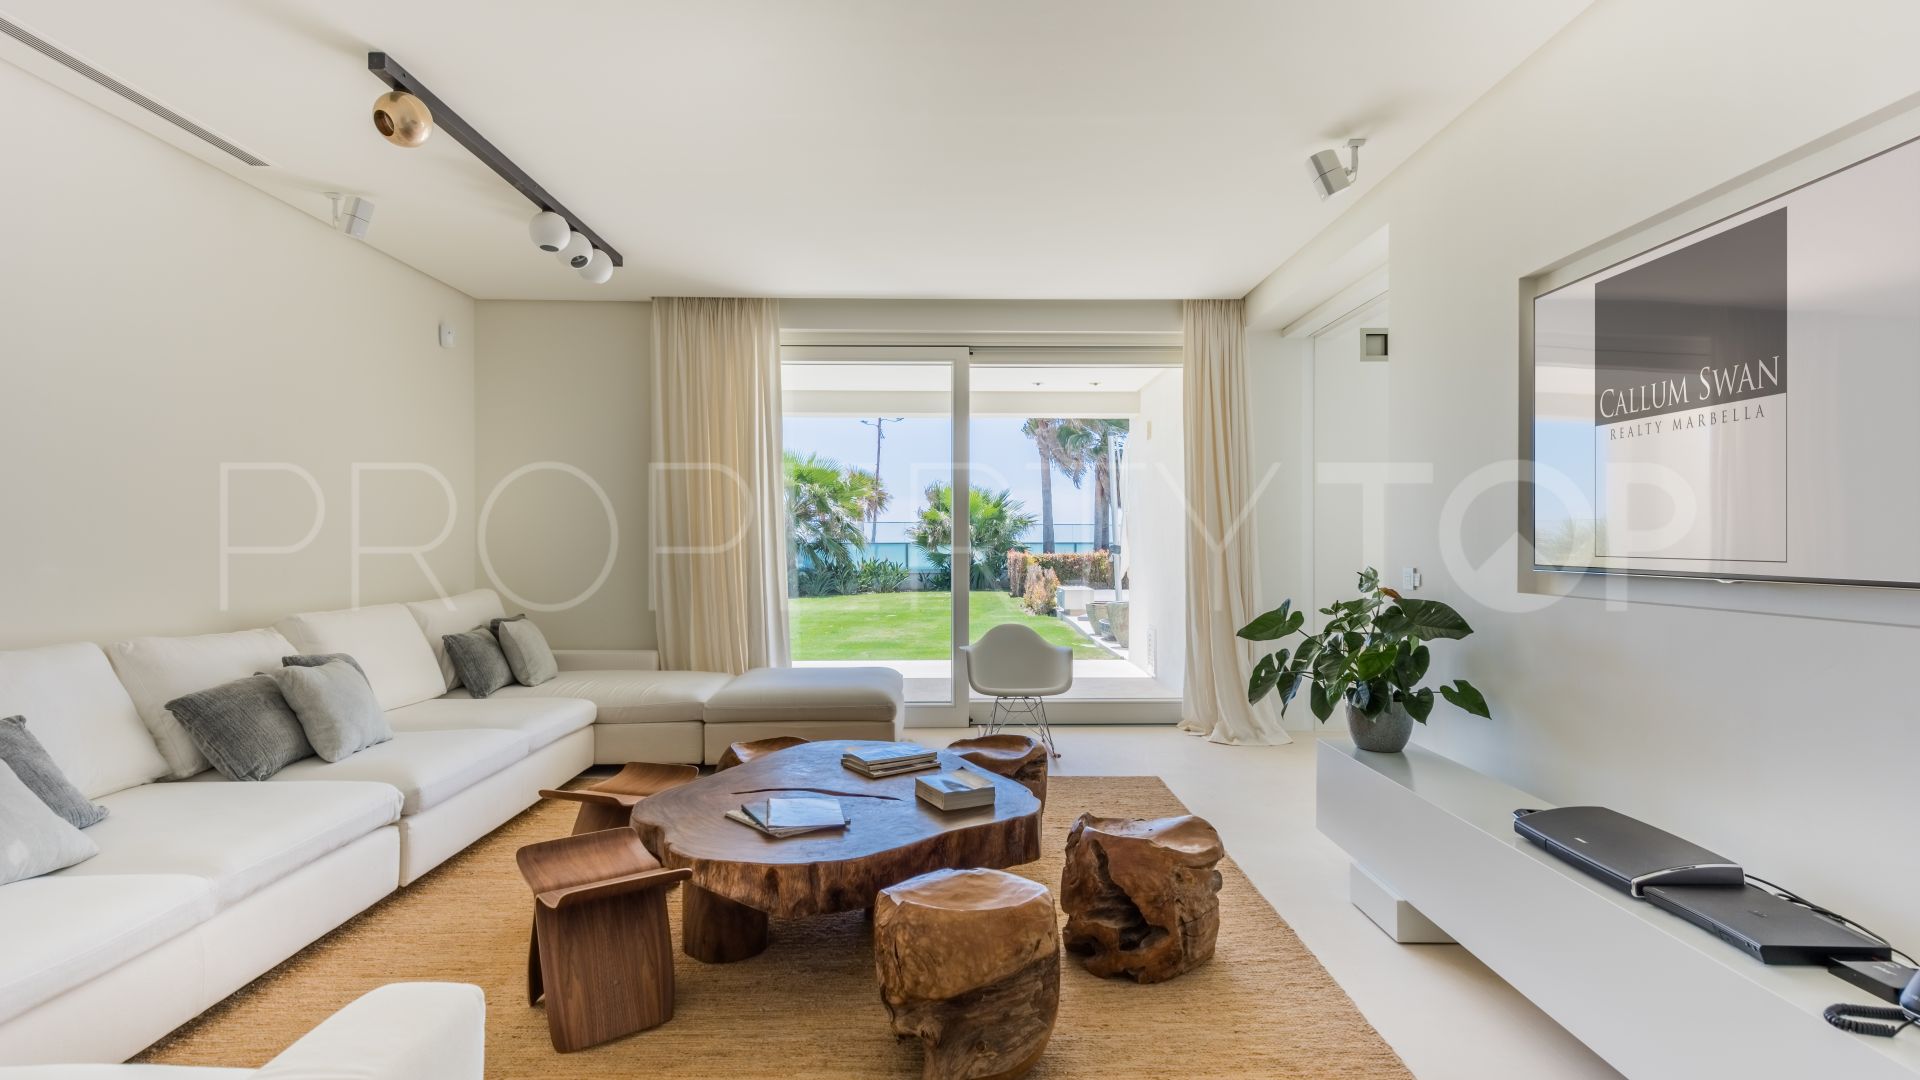 6 bedrooms villa in Rio Verde Playa for sale